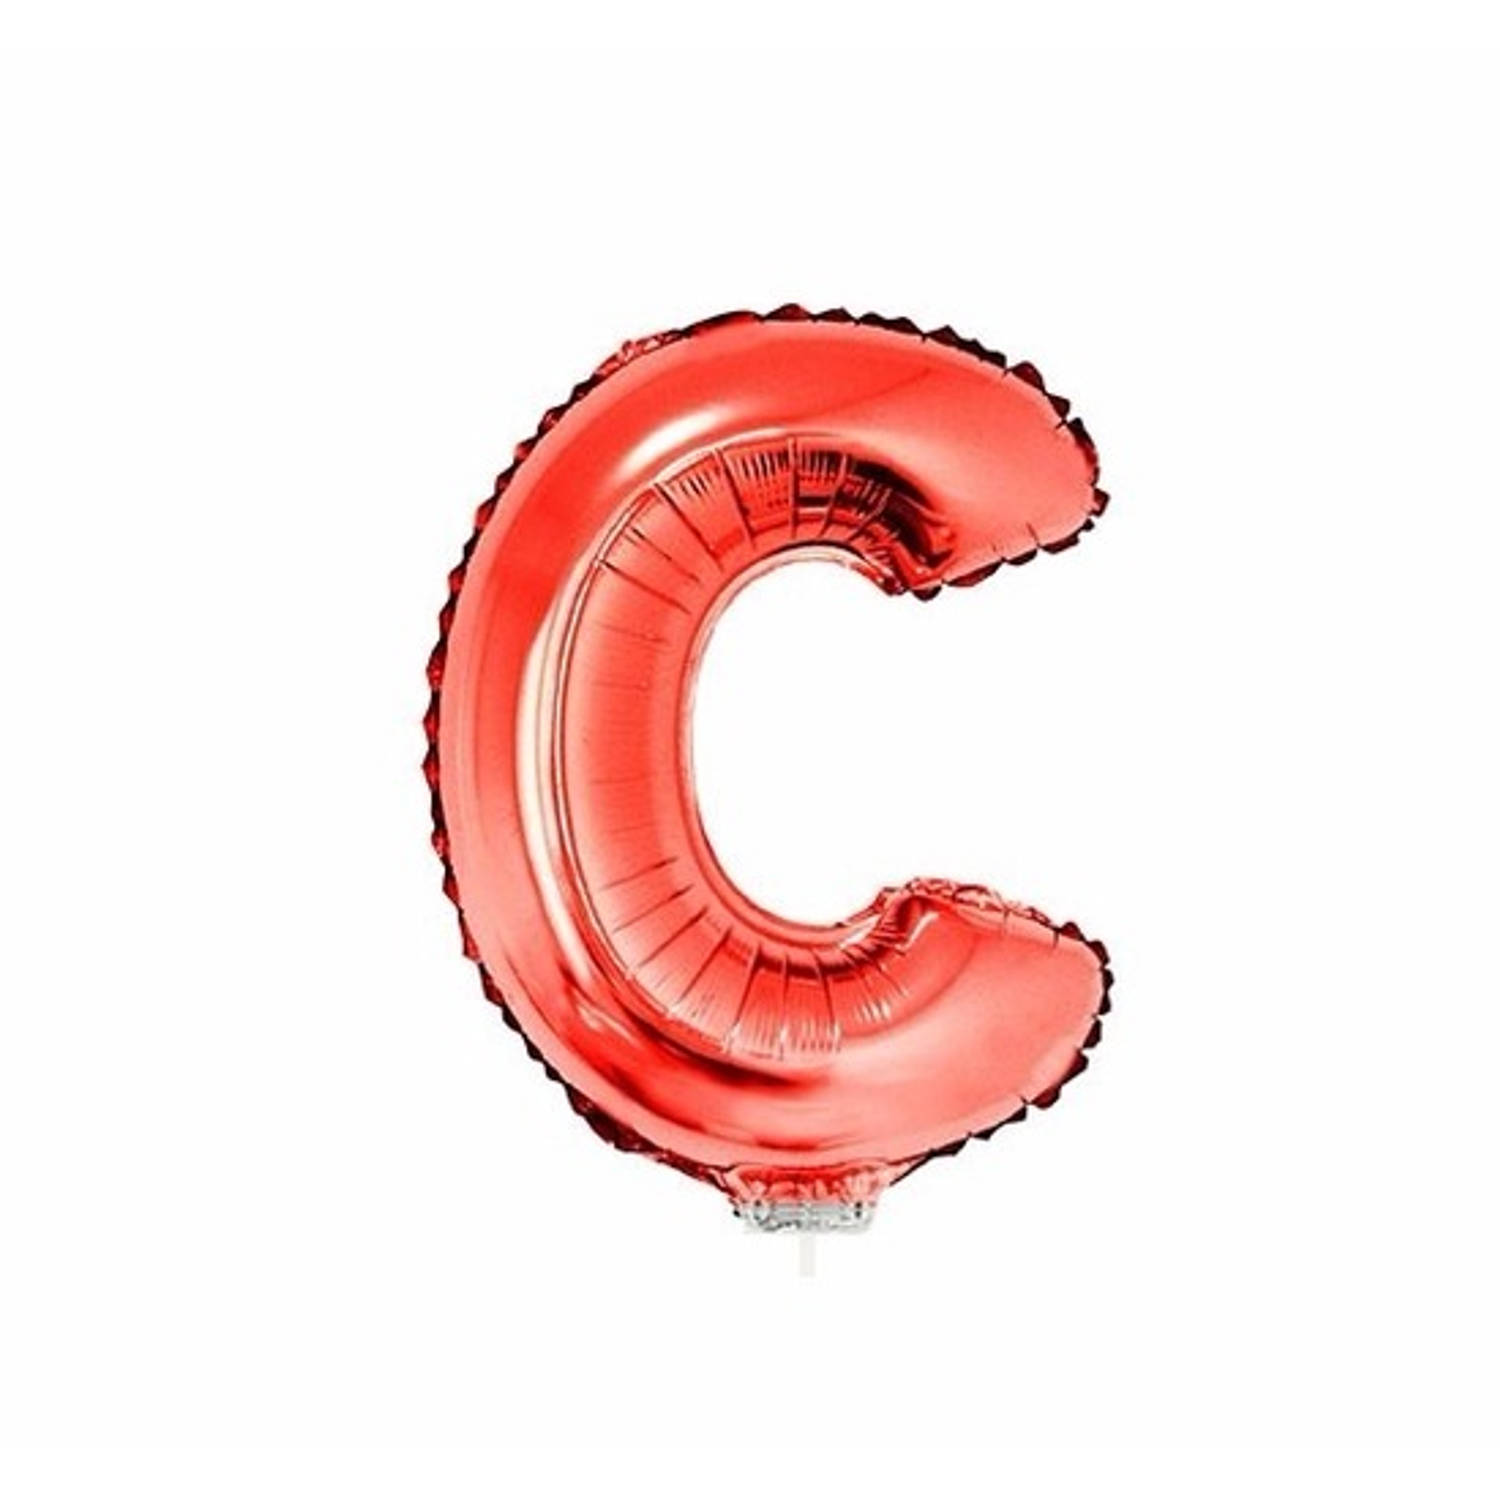 Rode opblaas letter c op stokje 41 cm